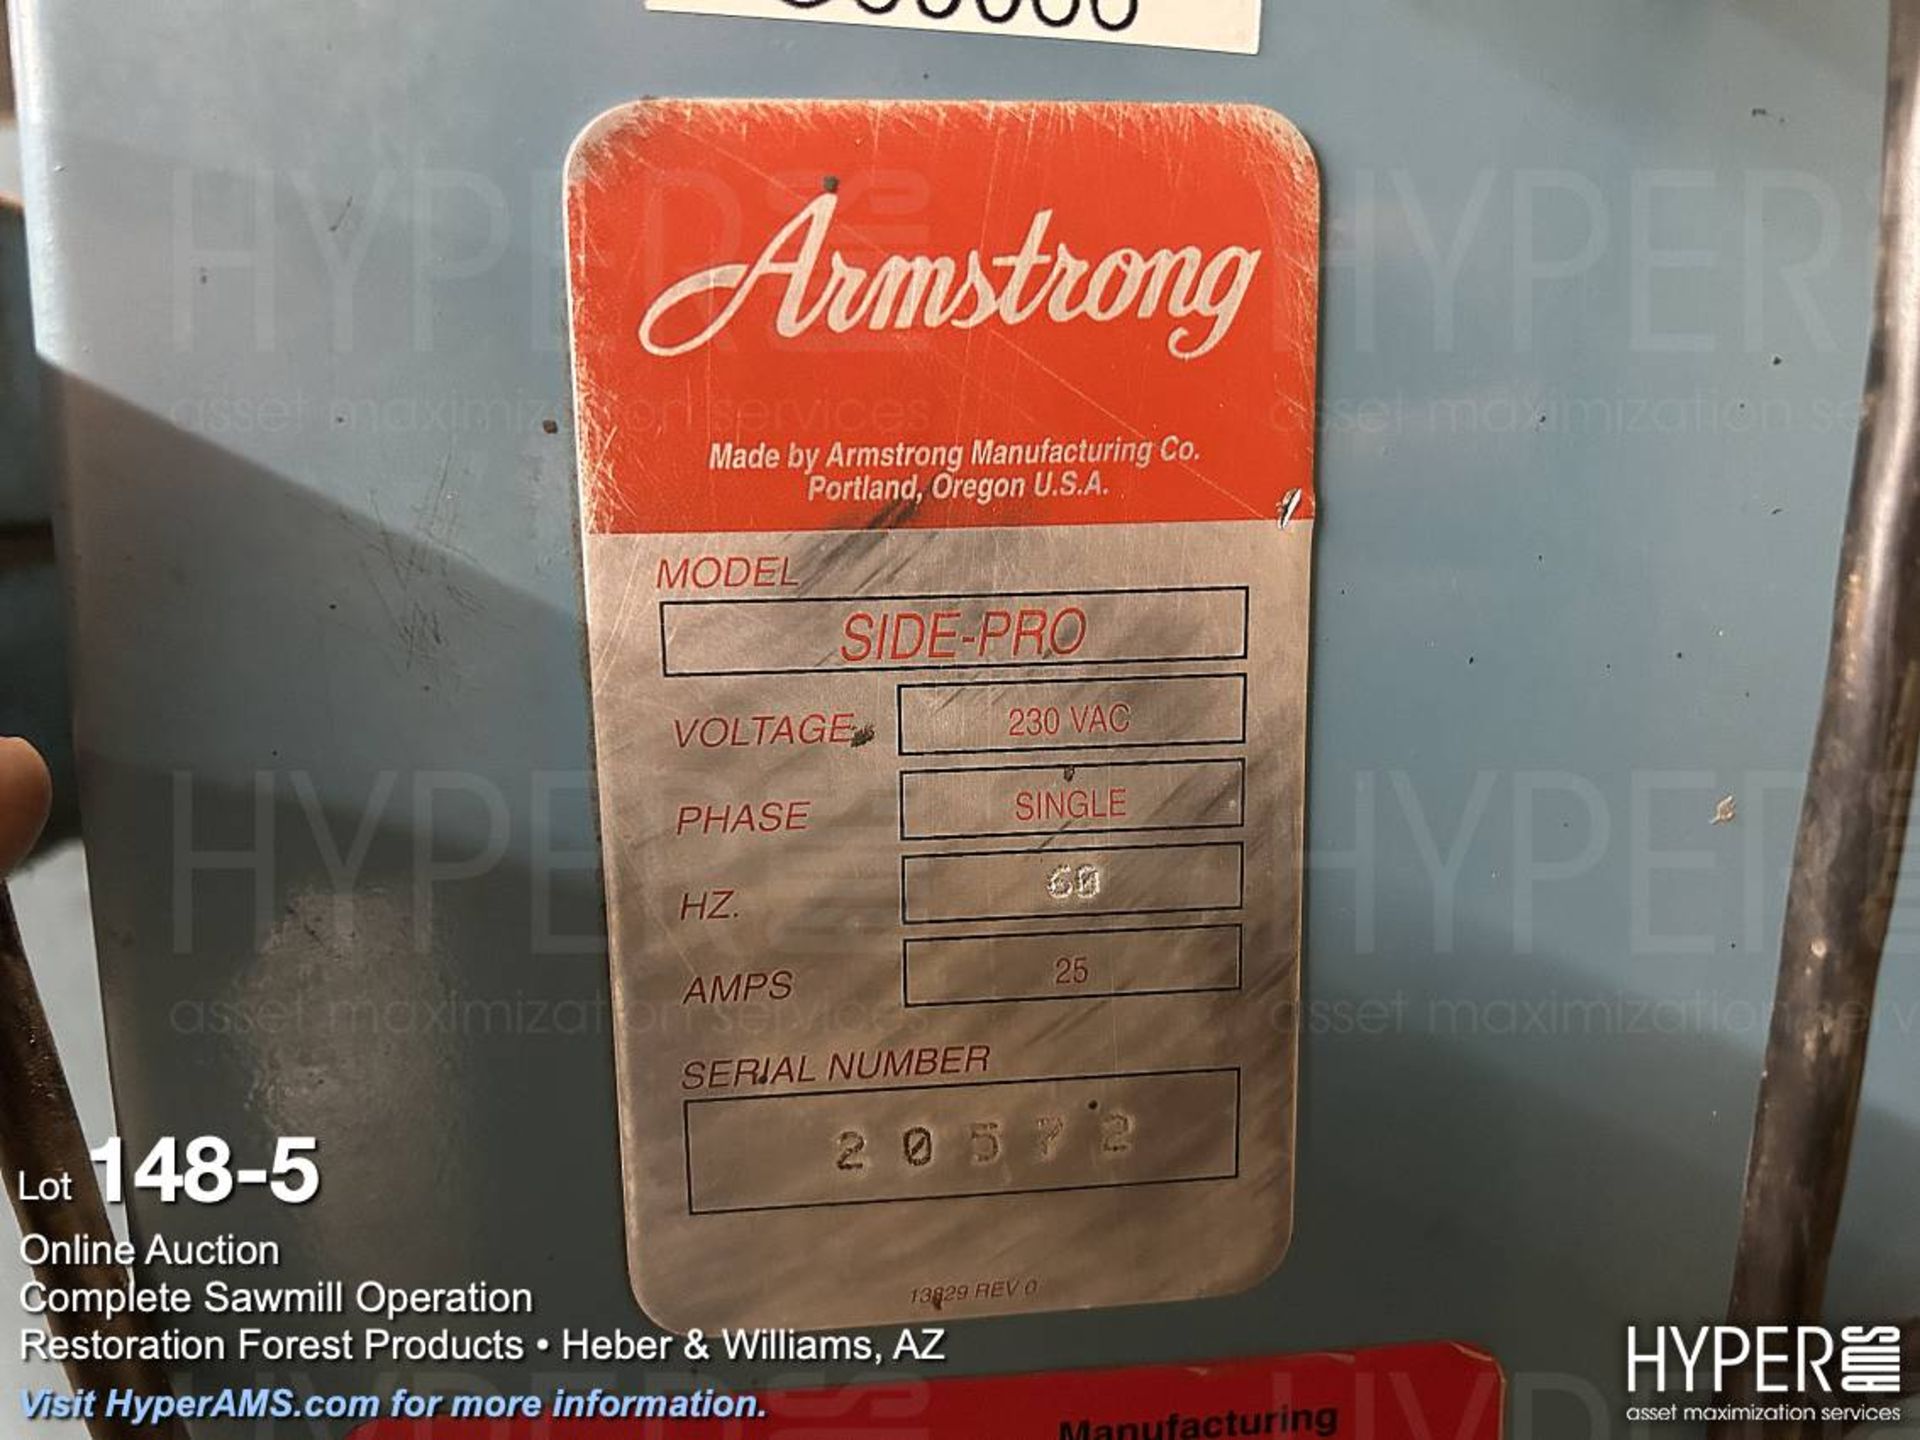 Armstrong Model Side-Pro band blade sharpener - Image 5 of 5